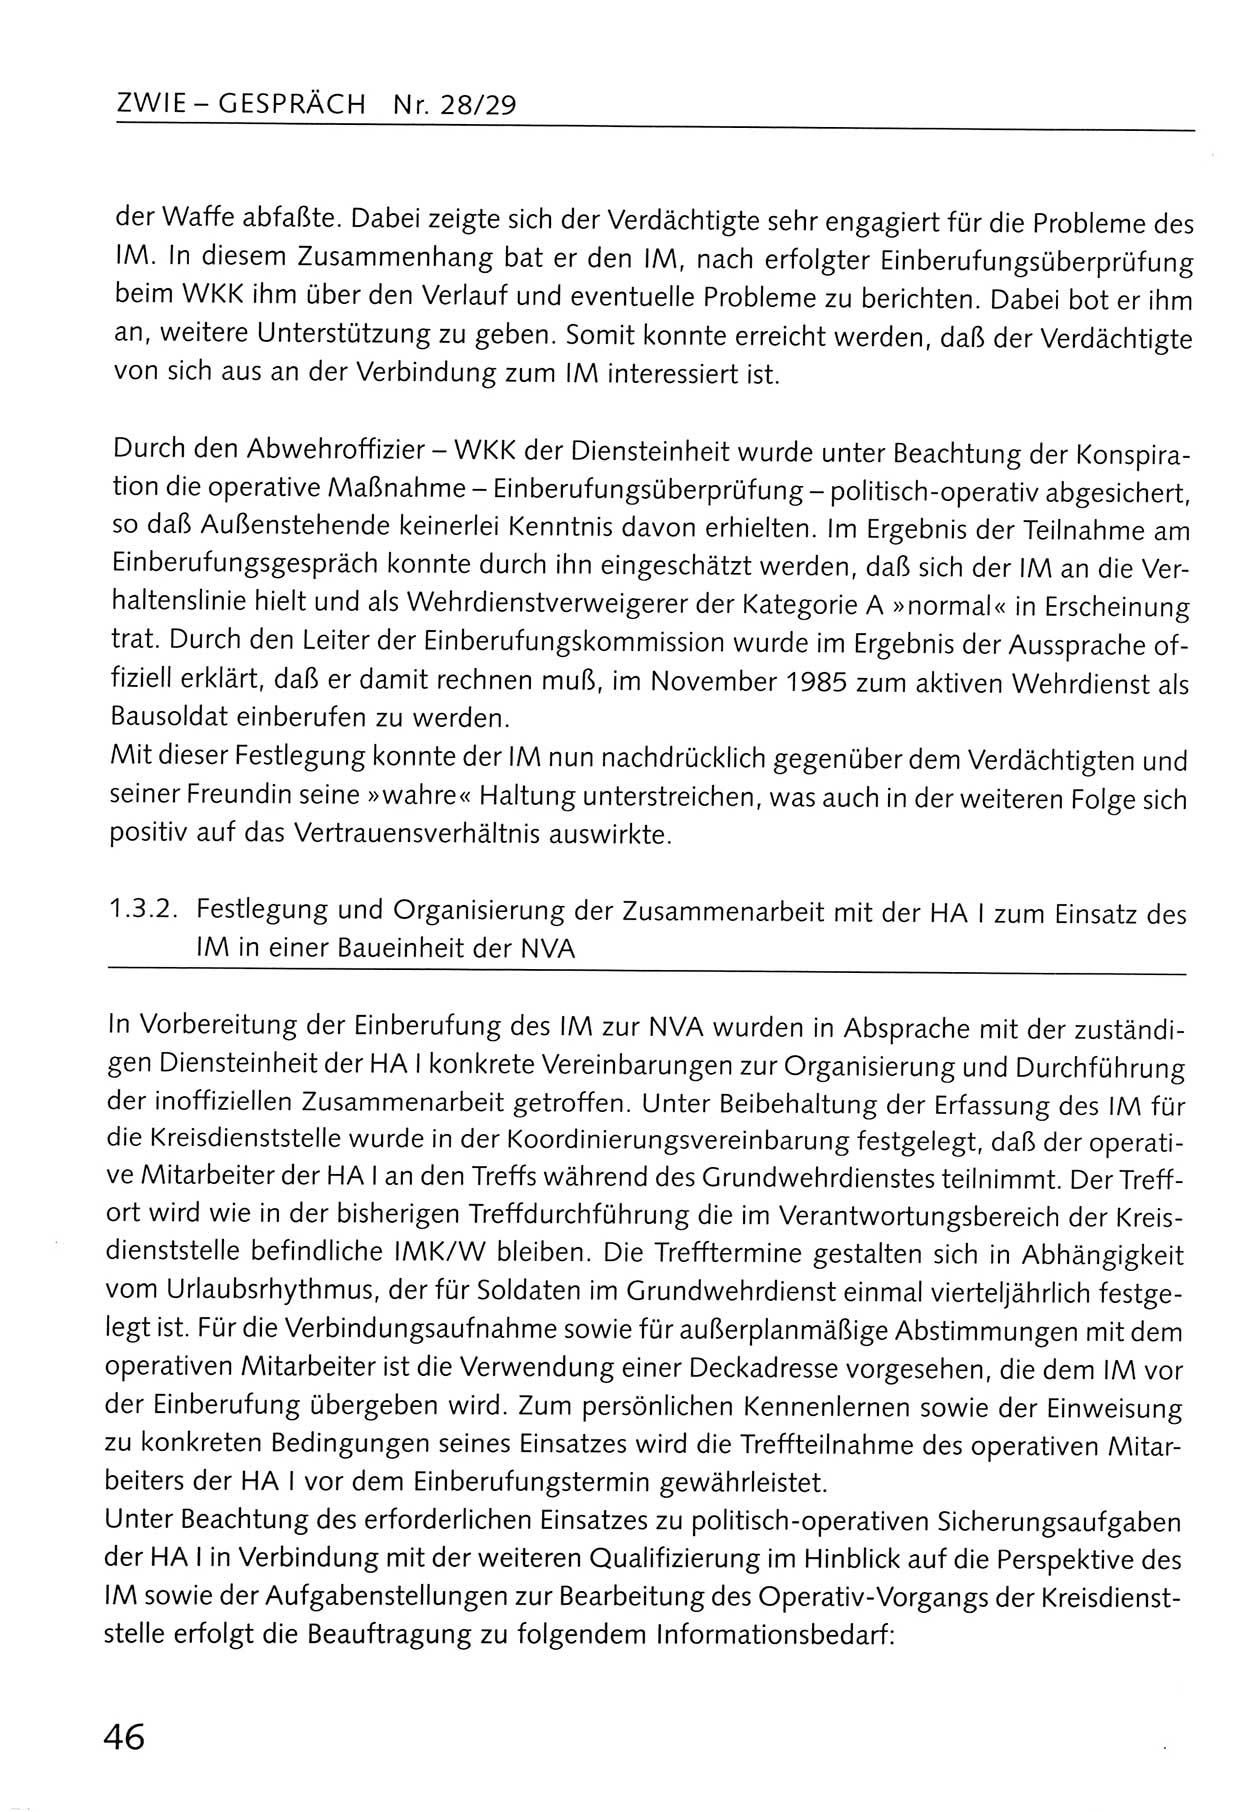 Zwie-Gespräch, Beiträge zum Umgang mit der Staatssicherheits-Vergangenheit [Deutsche Demokratische Republik (DDR)], Ausgabe Nr. 28/29, Berlin 1995, Seite 46 (Zwie-Gespr. Ausg. 28/29 1995, S. 46)